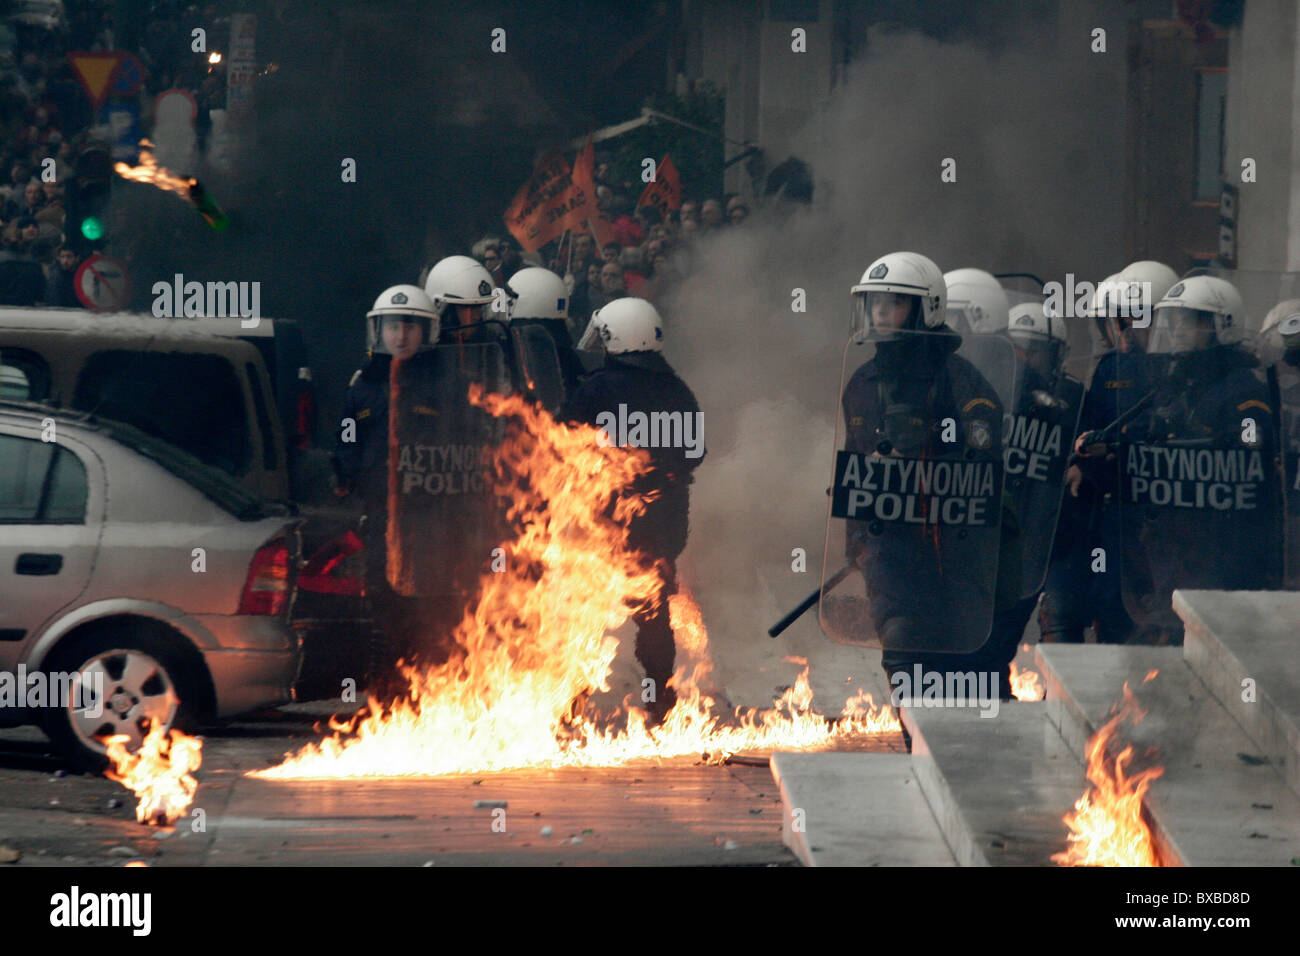 Demonstranten Zusammenstoß mit der Polizei, werfen Molotowcocktails und Stein gegen sie. Generalstreik in Griechenland als Gewerkschaften Protest neue Arbeit Reformen unter anhaltenden Sparmaßnahmen. Stockfoto